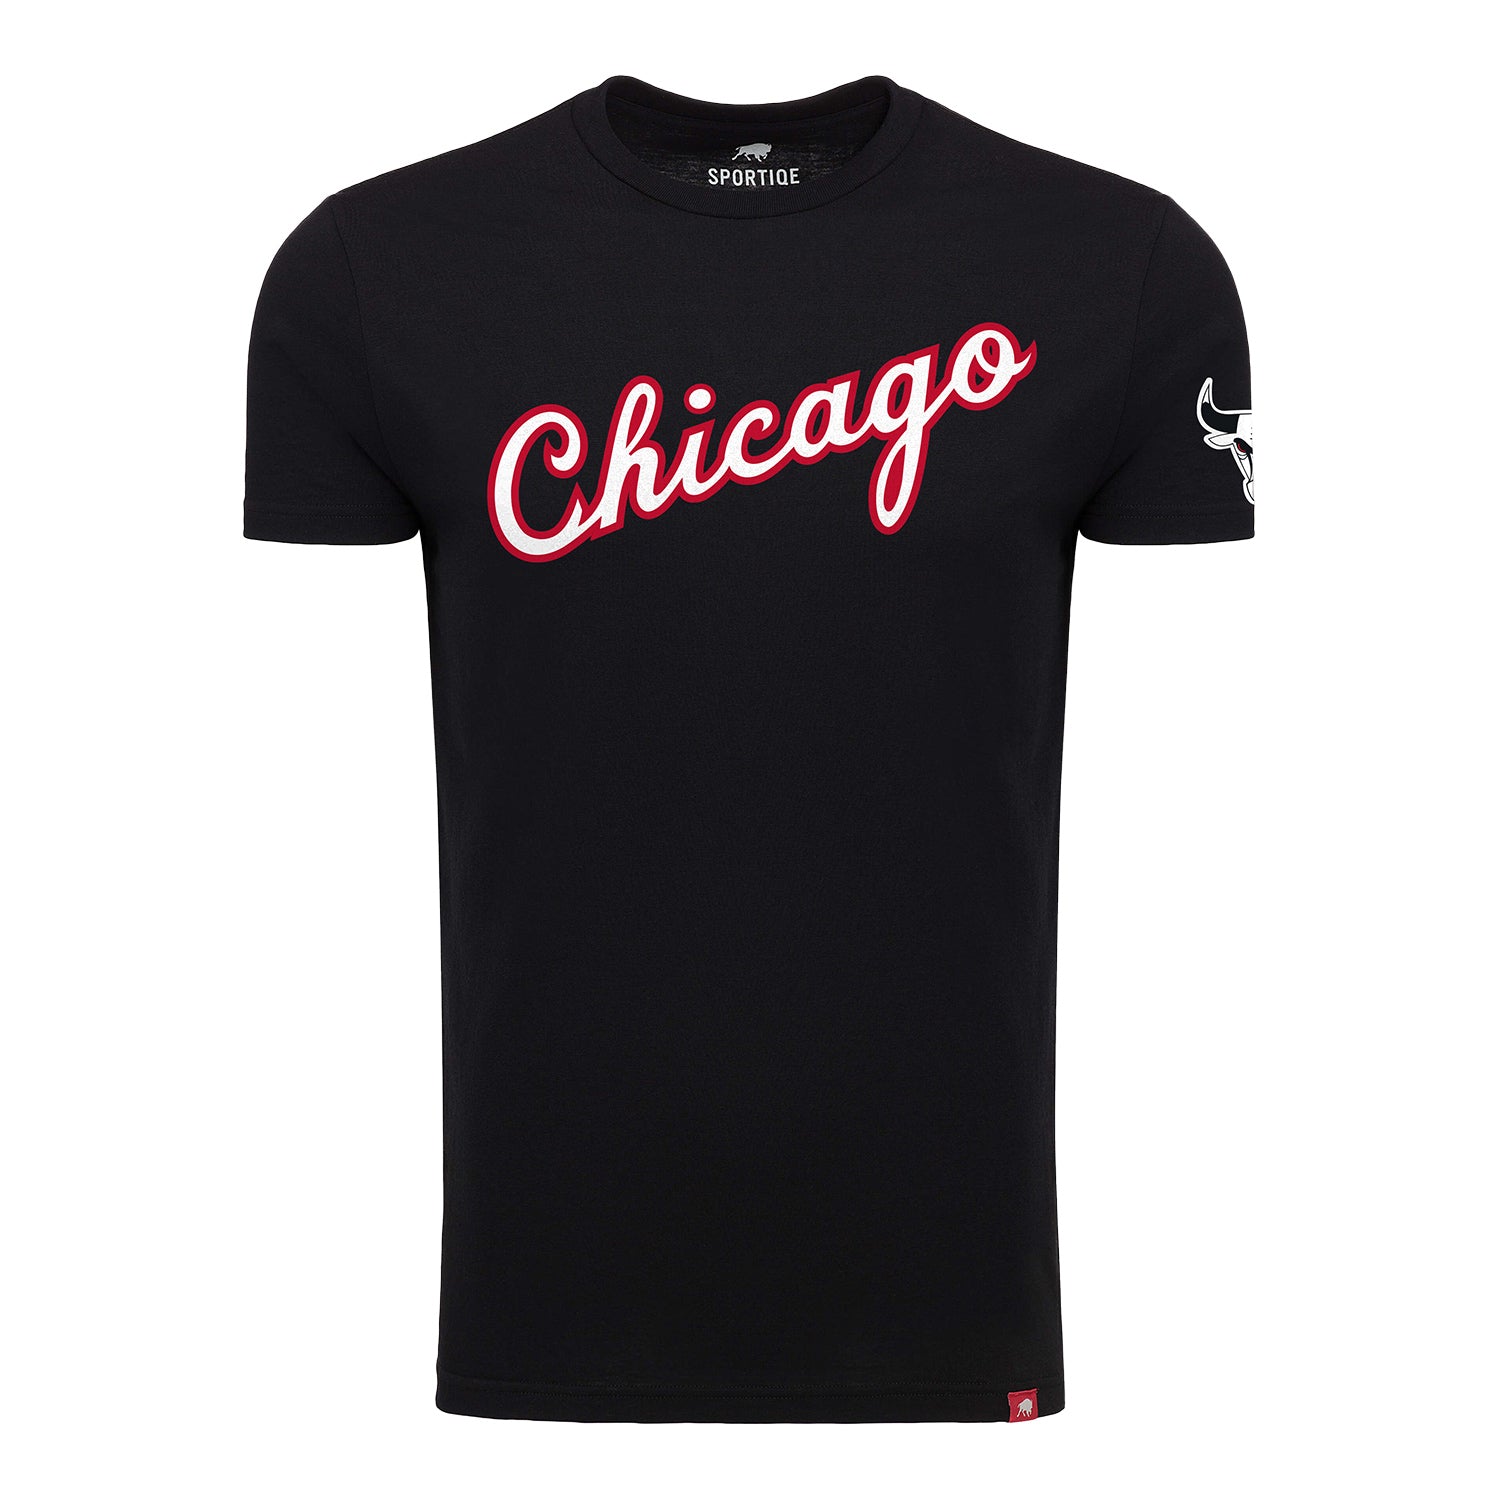 Chicago Bulls Sportiqe Script Black Comfy T-Shirt